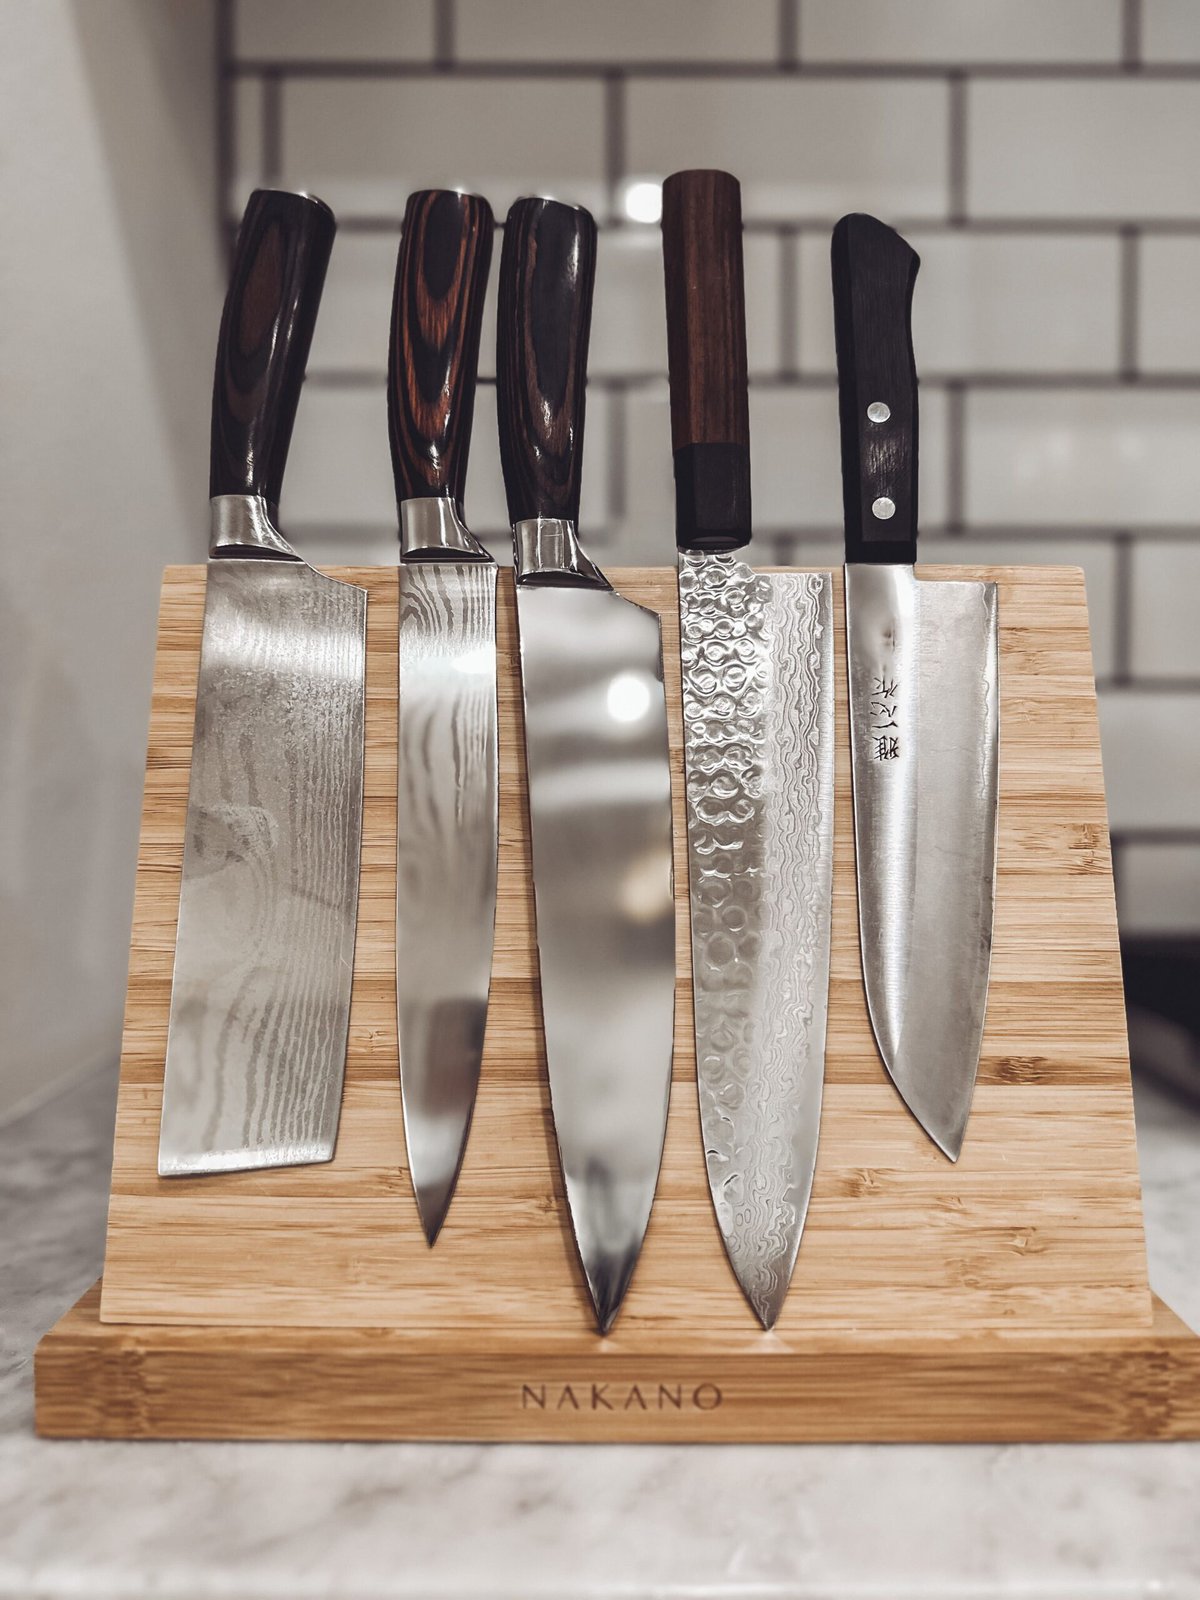 nakano knives